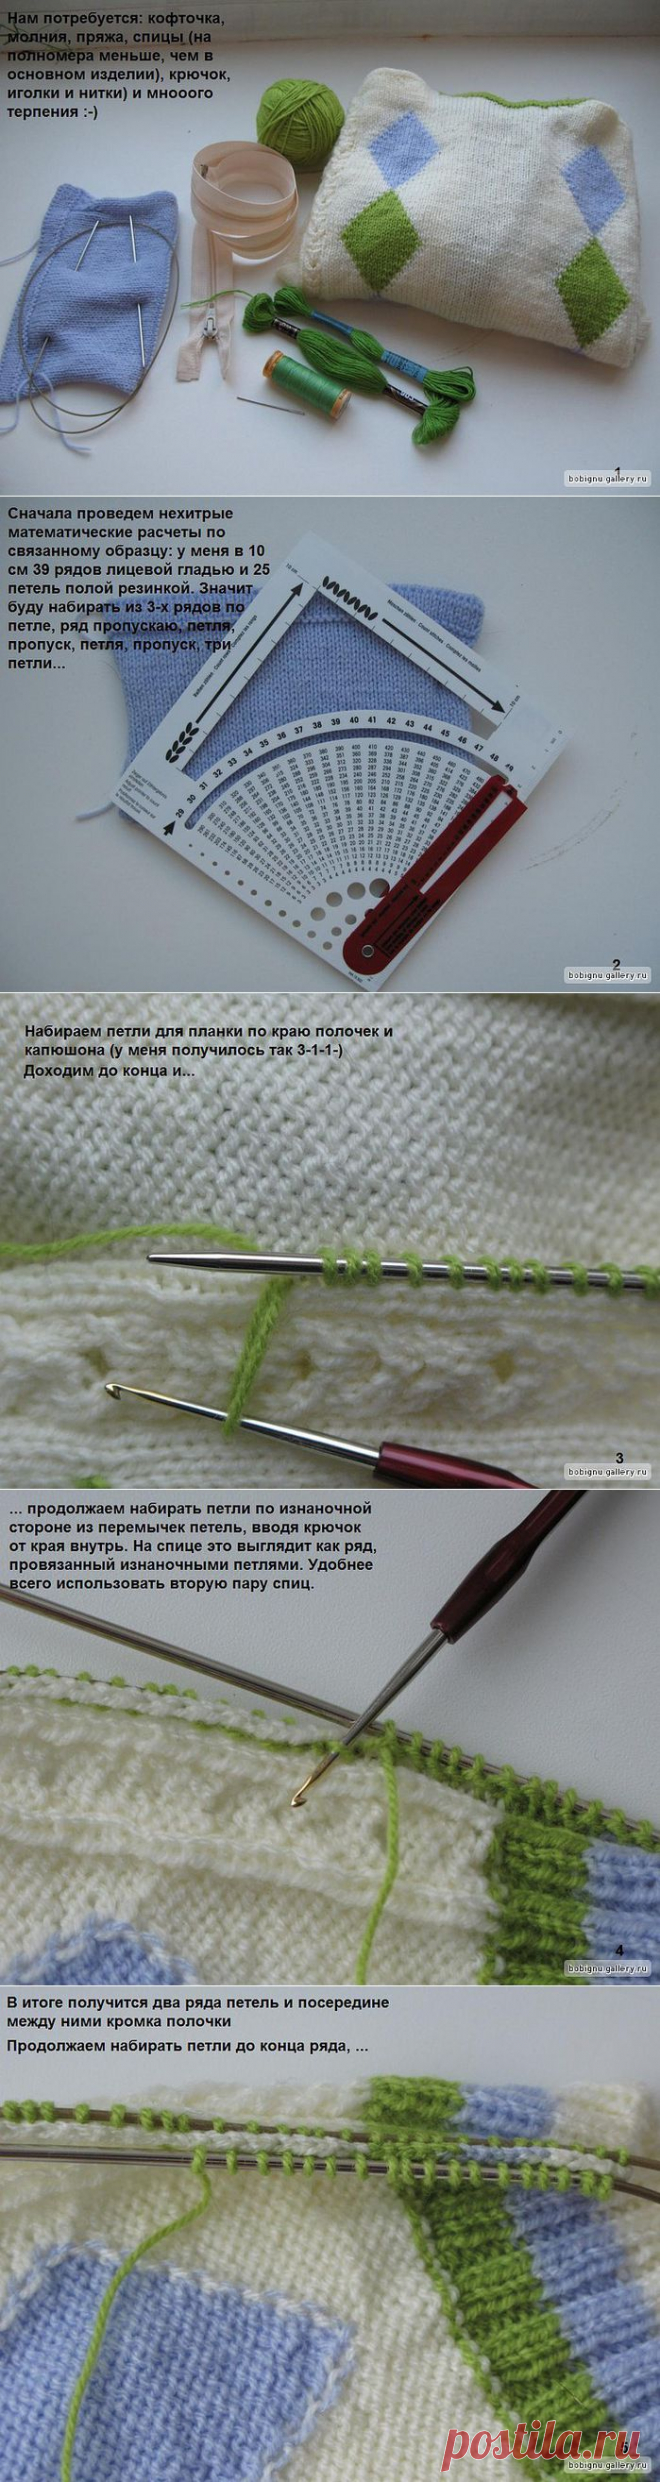 Мастер-класс по вшиванию застёжки-молнии в вязаное изделие.